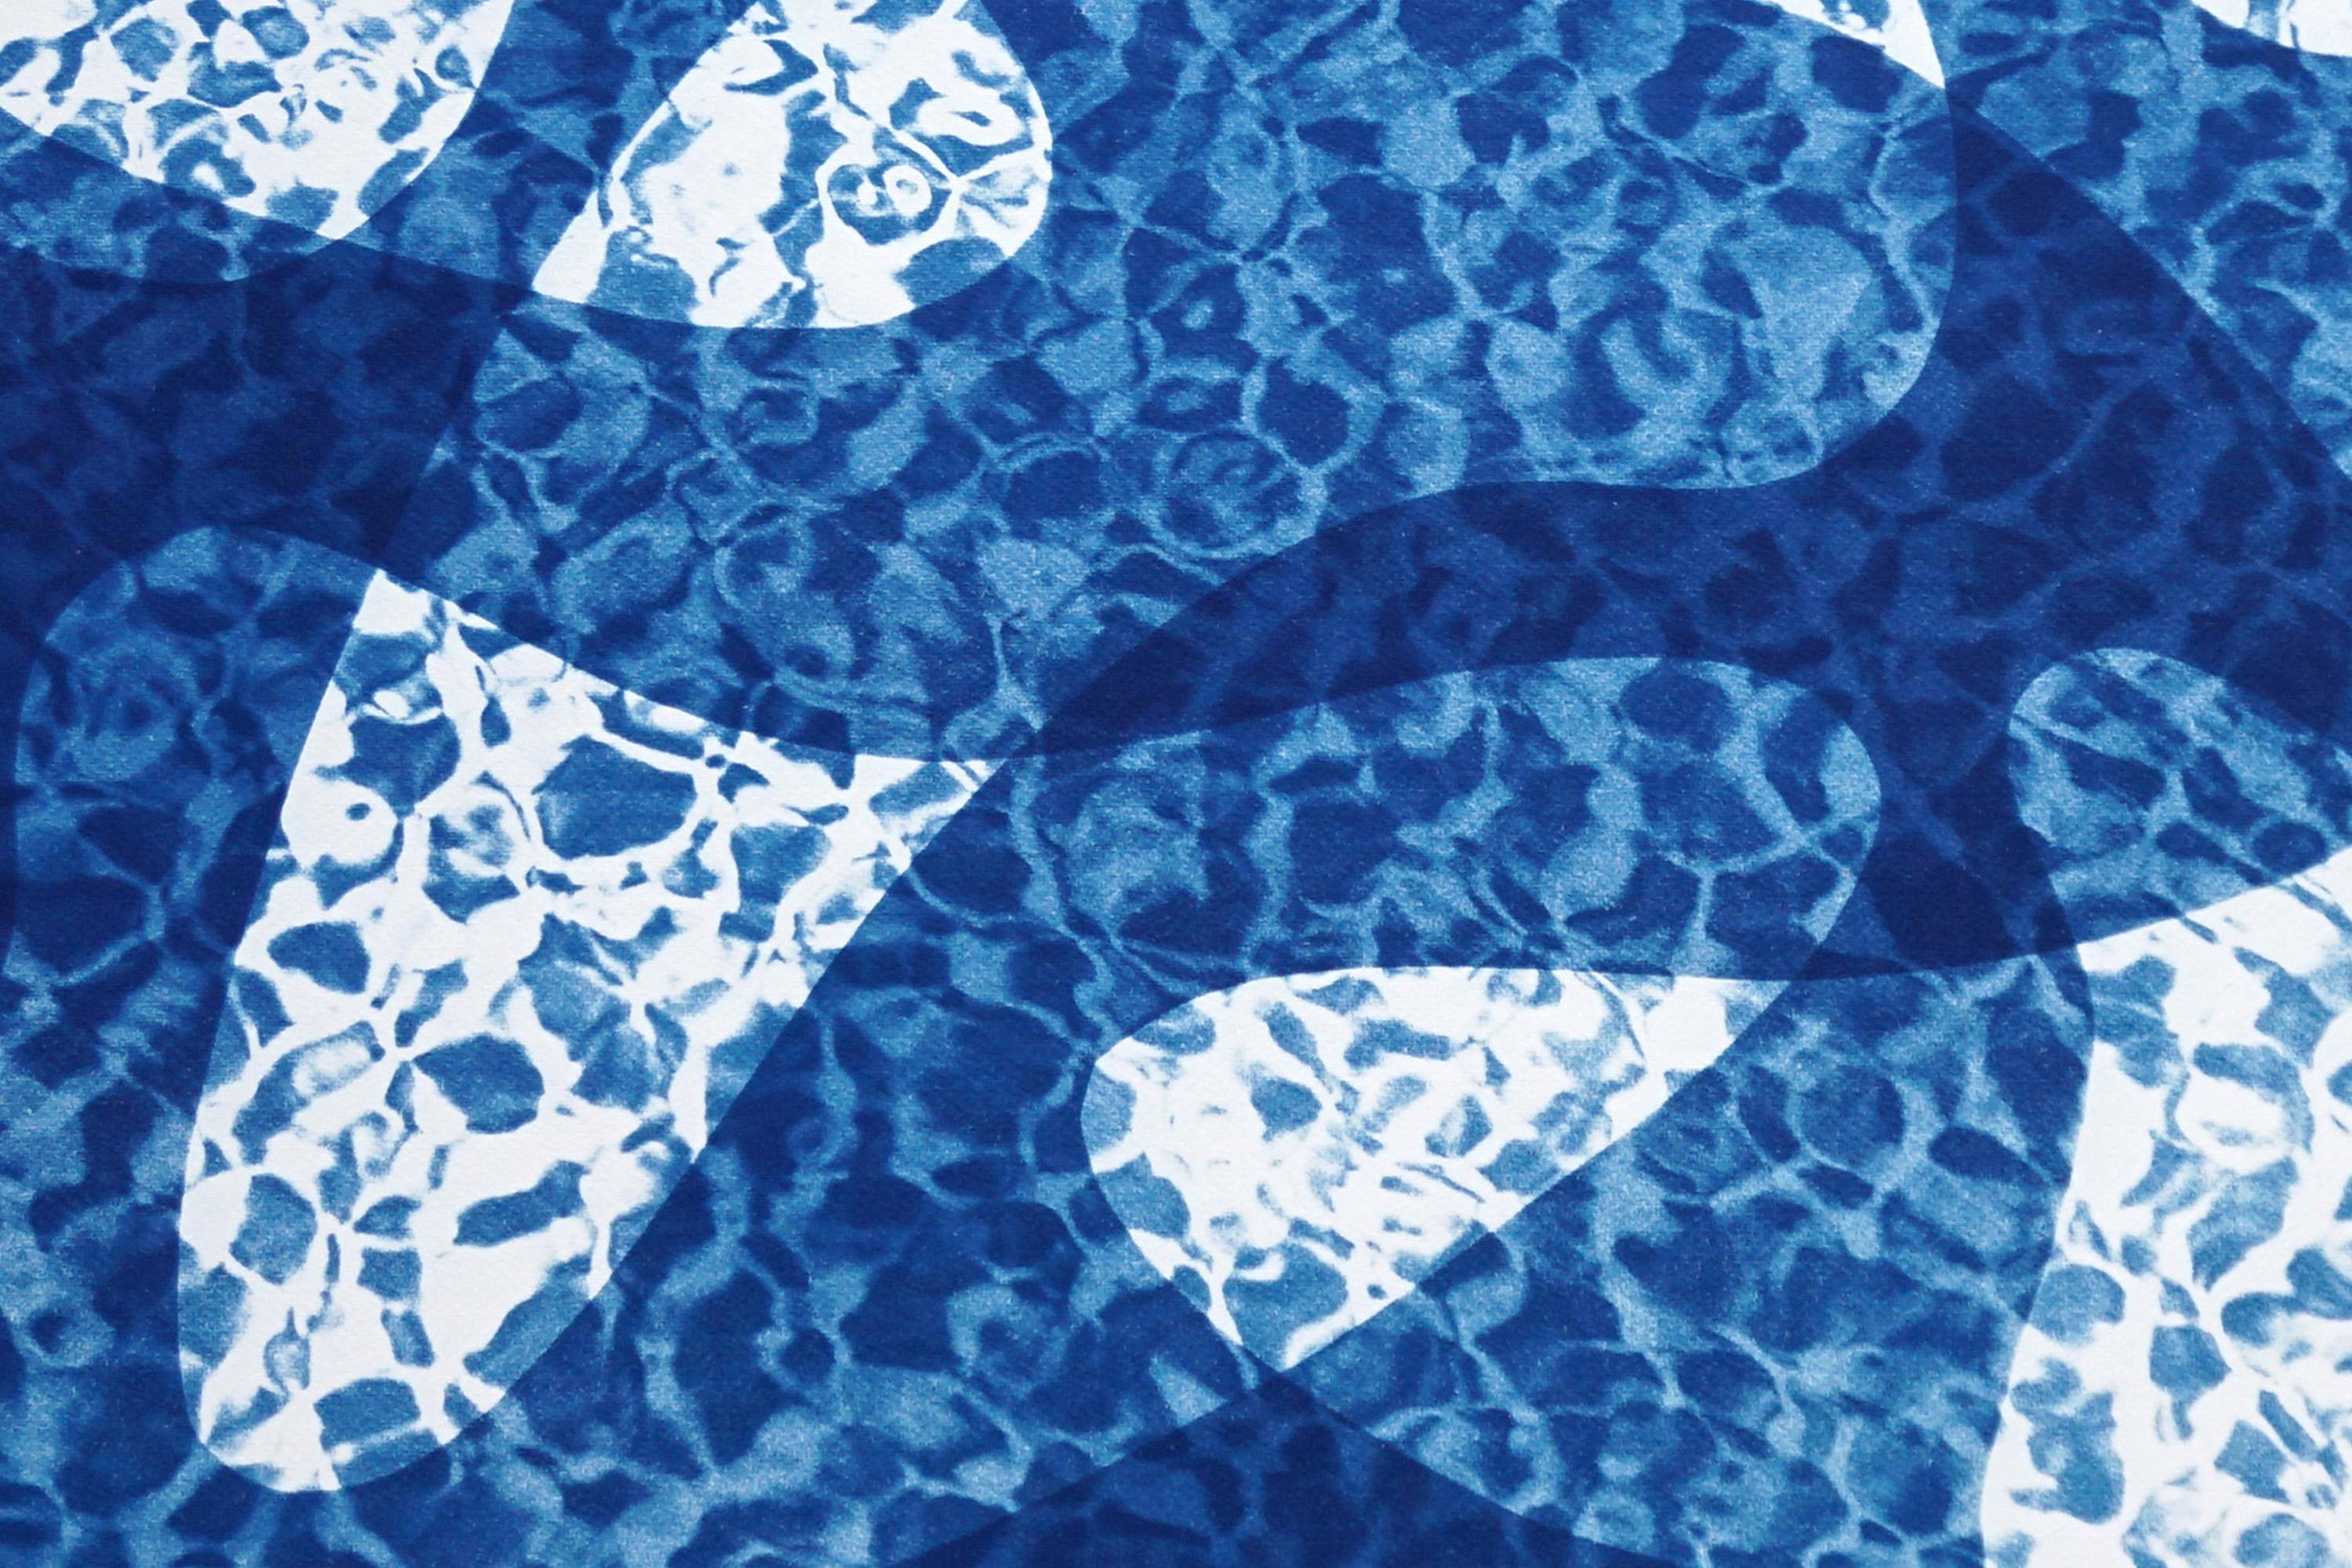 Reflection de l'eau de poissons sous l'eau, monotype de cyanotype de piscine dans les tons bleus - Bleu Abstract Print par Kind of Cyan